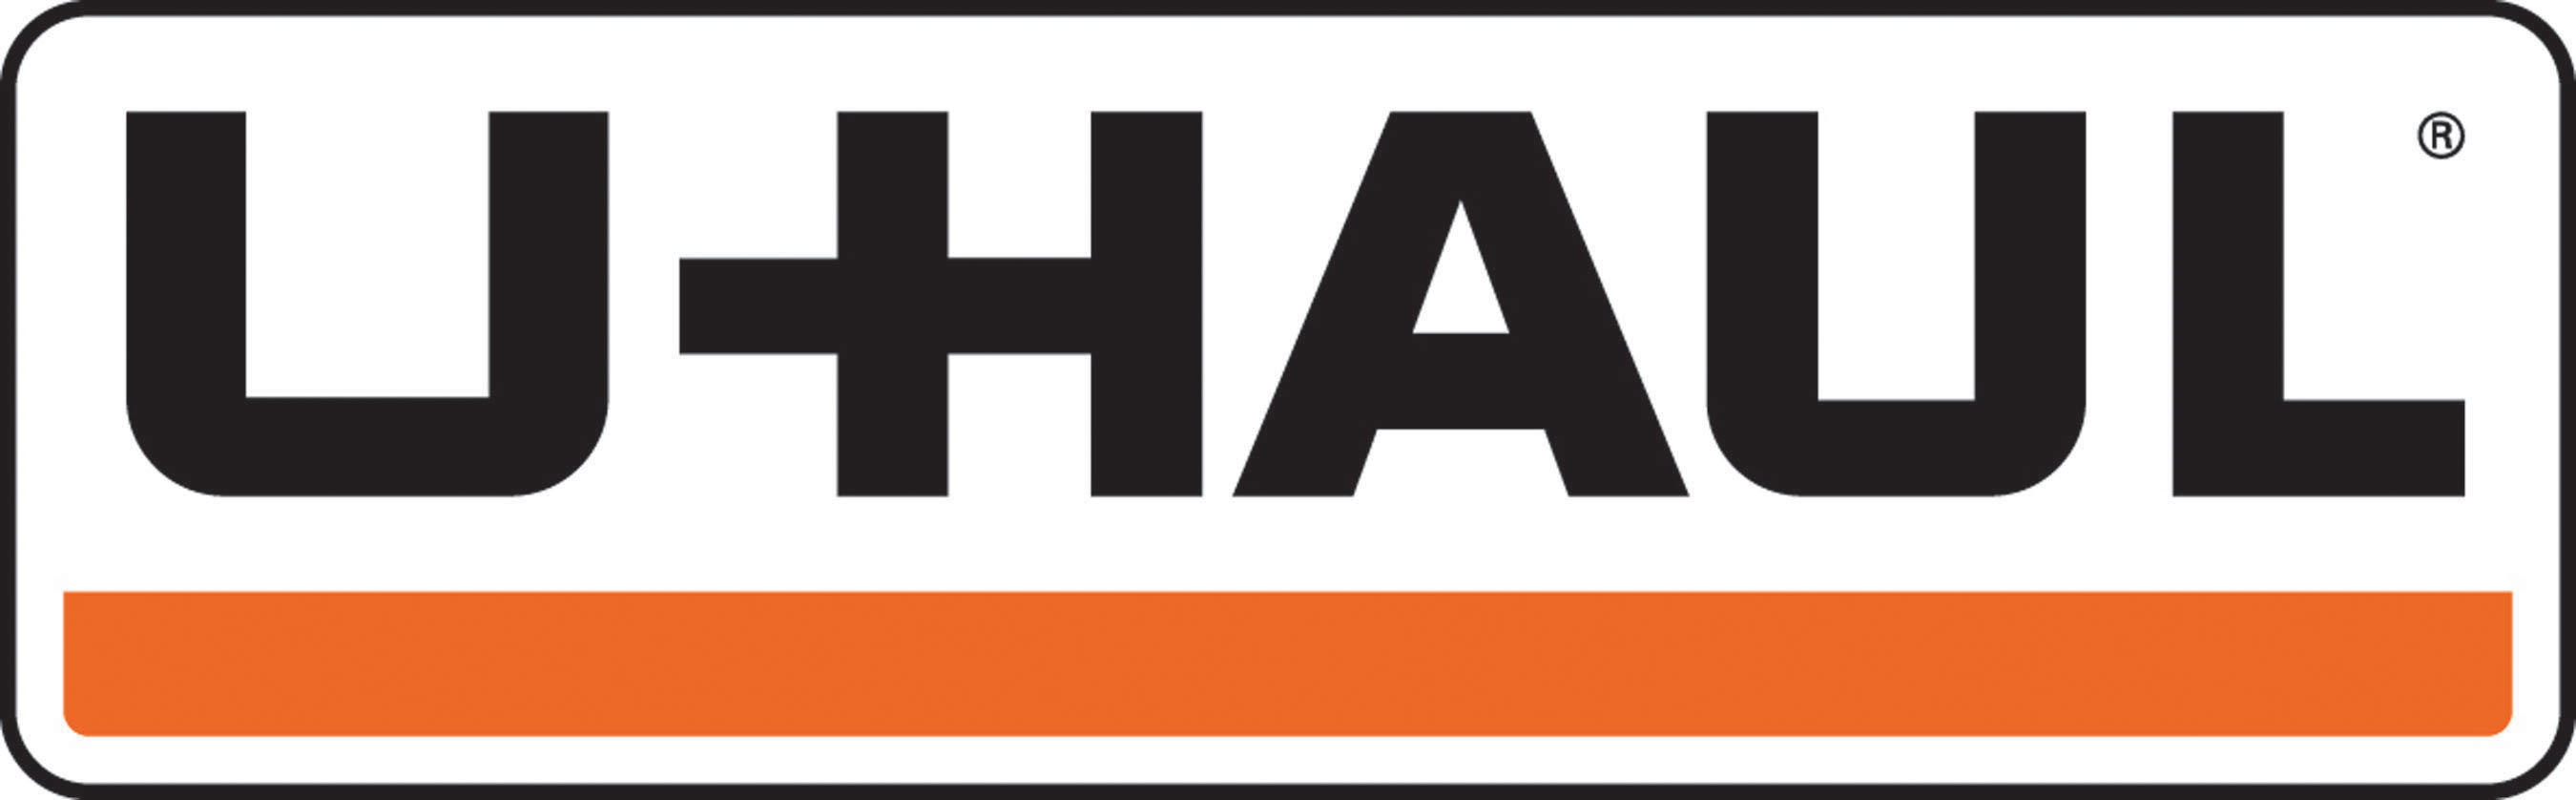 U-Haul Logo (PRNewsFoto/U-Haul) (PRNewsfoto/U-Haul)